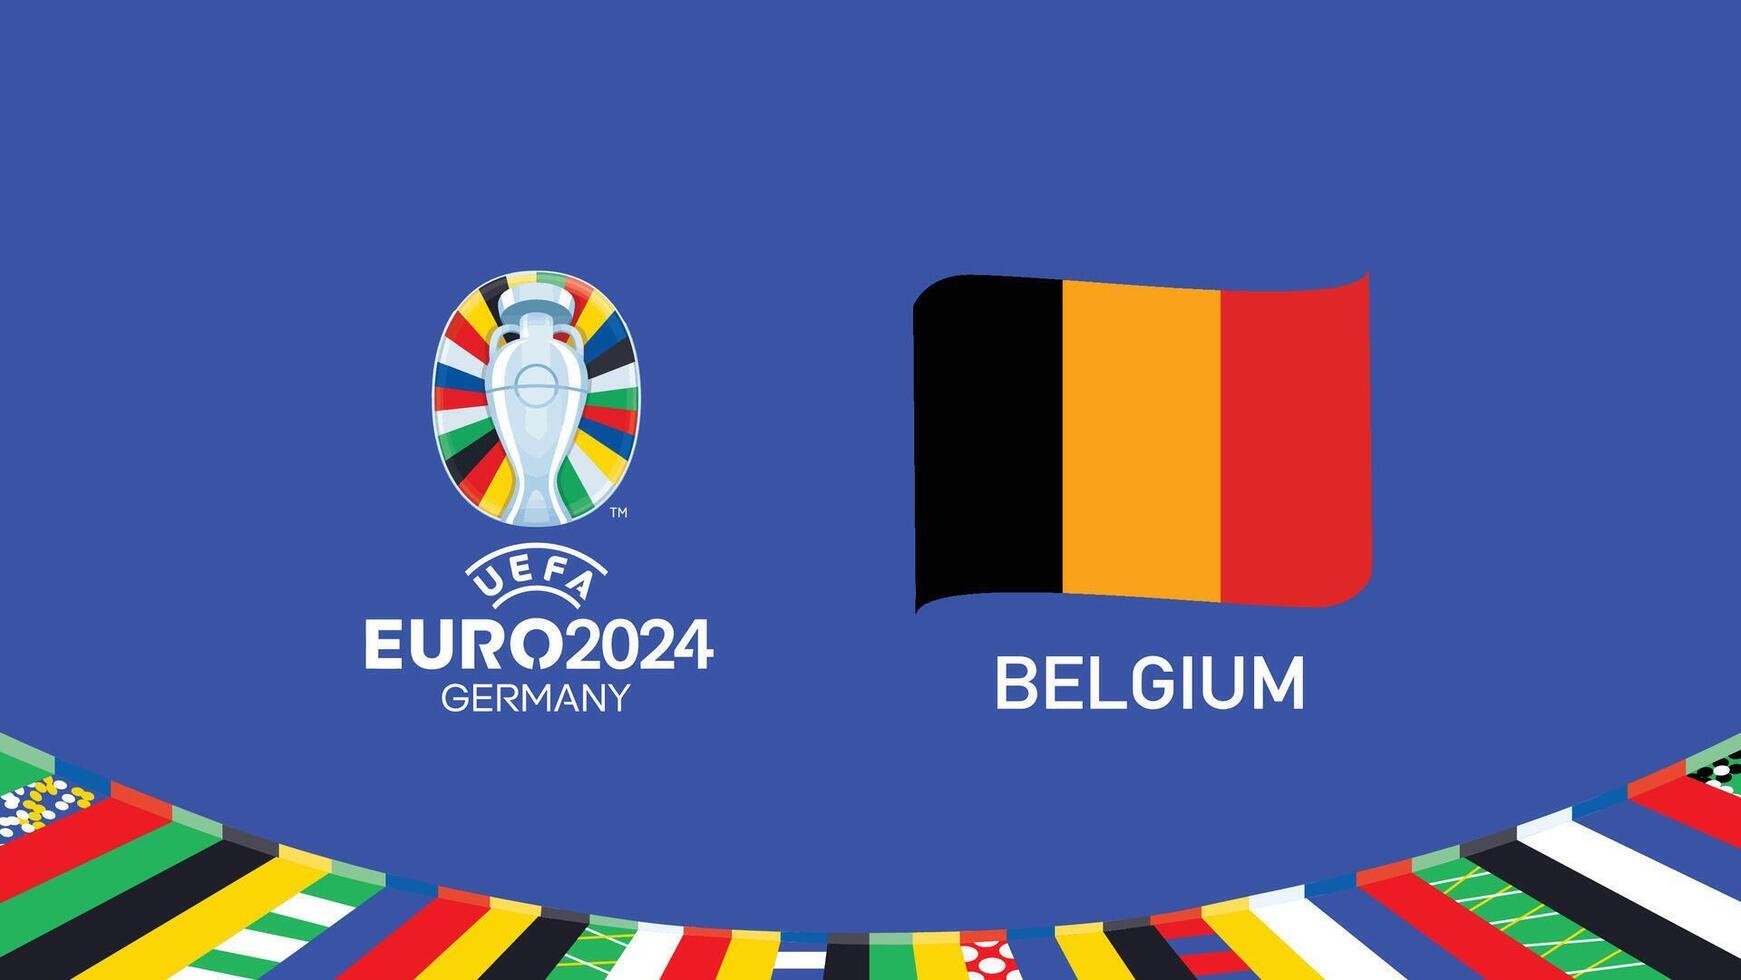 euro 2024 Belgique emblème ruban équipes conception avec officiel symbole logo abstrait des pays européen Football illustration vecteur